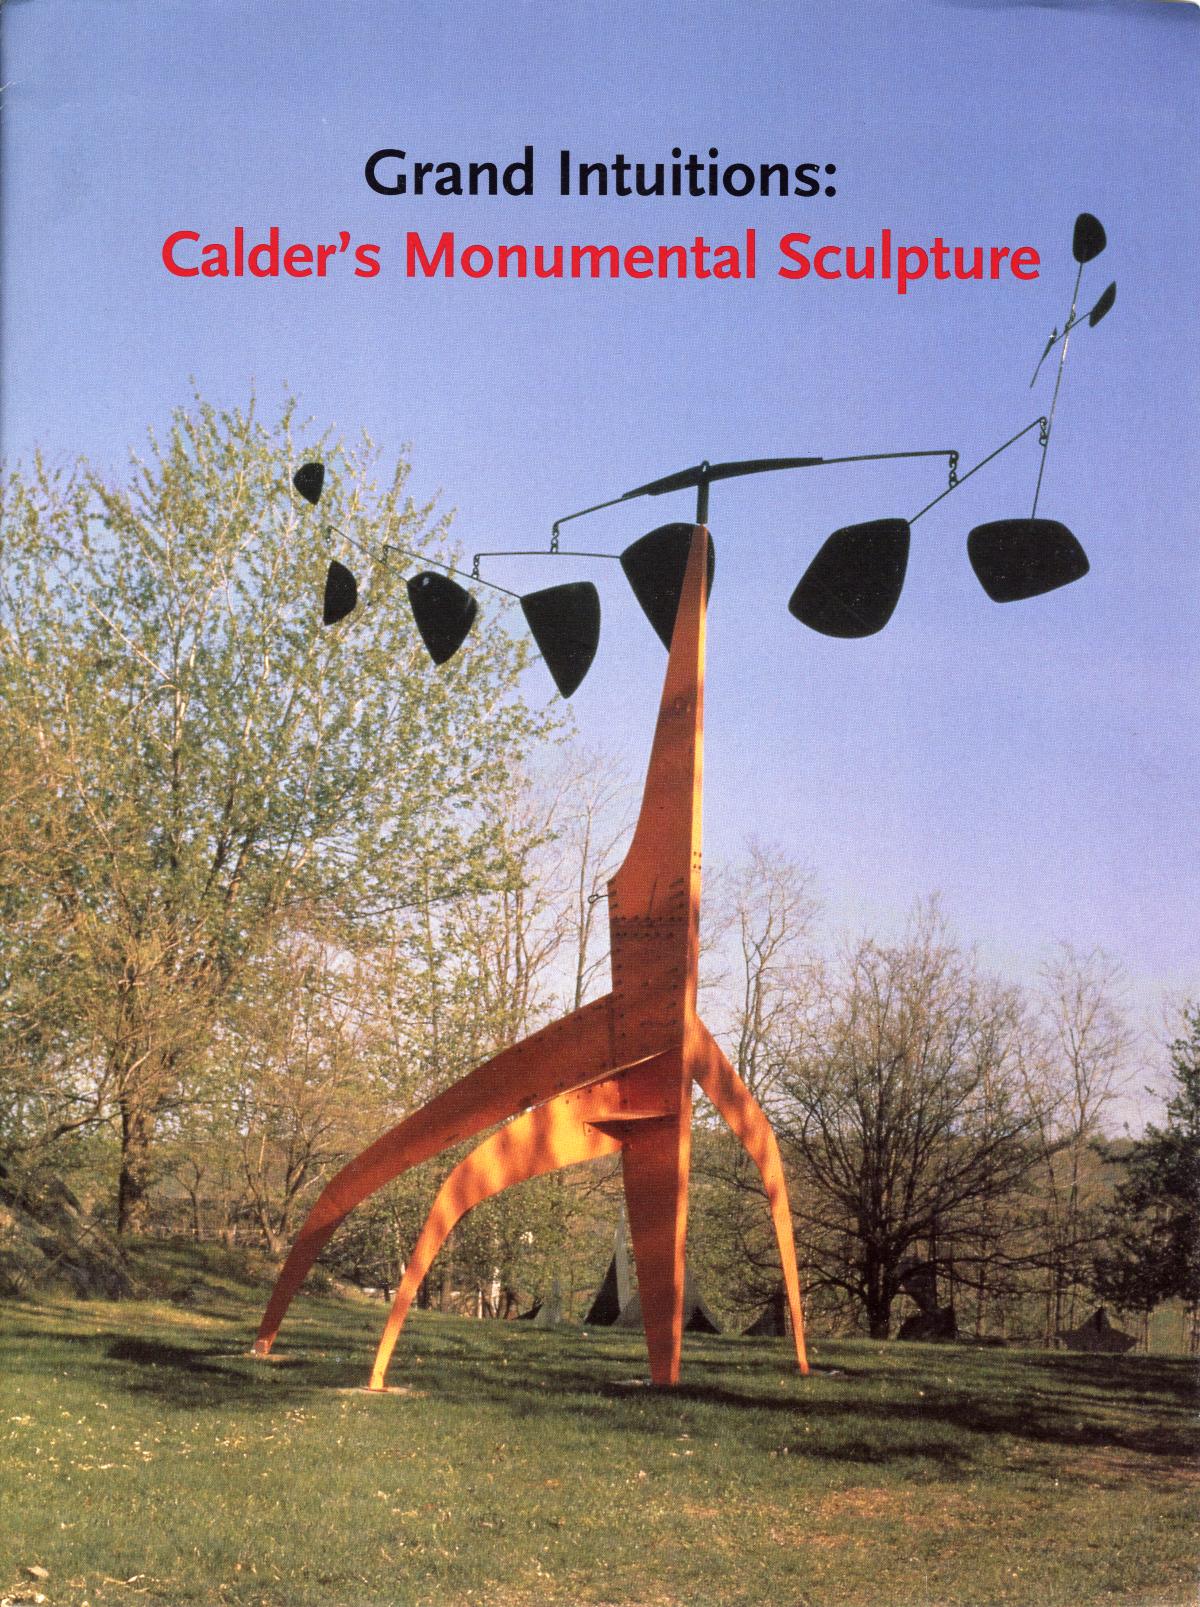 Grand Intuitions: Calder's Monumental Sculpture, May 21 – November 15, 2001, May 22 – November 15, 2002, April 1 – November 15, 2003, press folder © 2020 Calder Foundation, New York / Artists Rights Society (ARS), New York